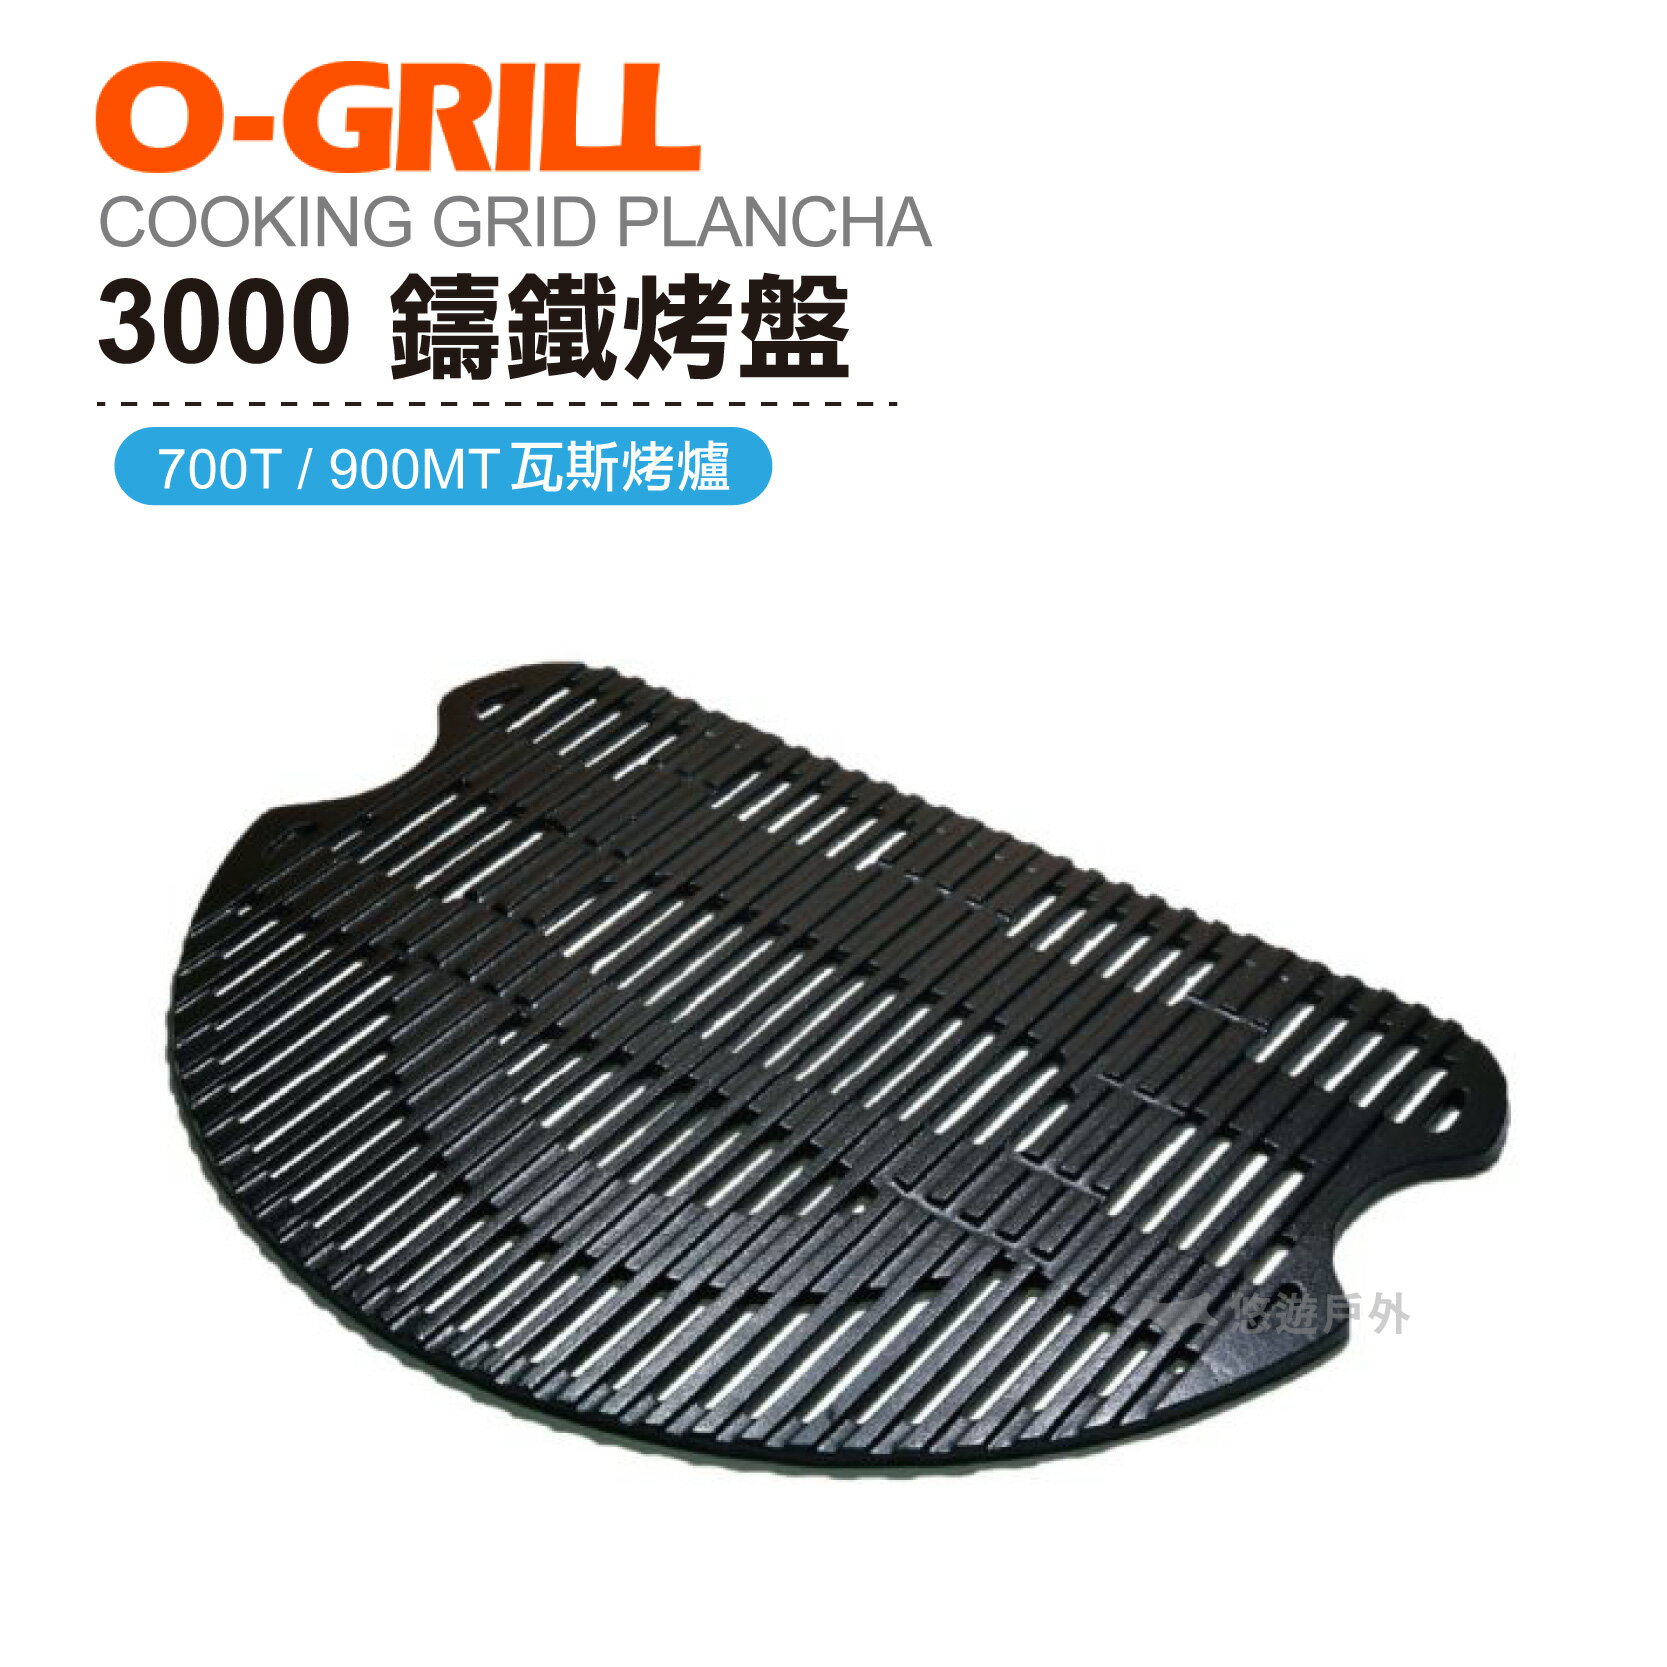 O-GRILL 3000 鑄鐵烤盤 烤肉 海鮮 露營 登山 悠遊戶外